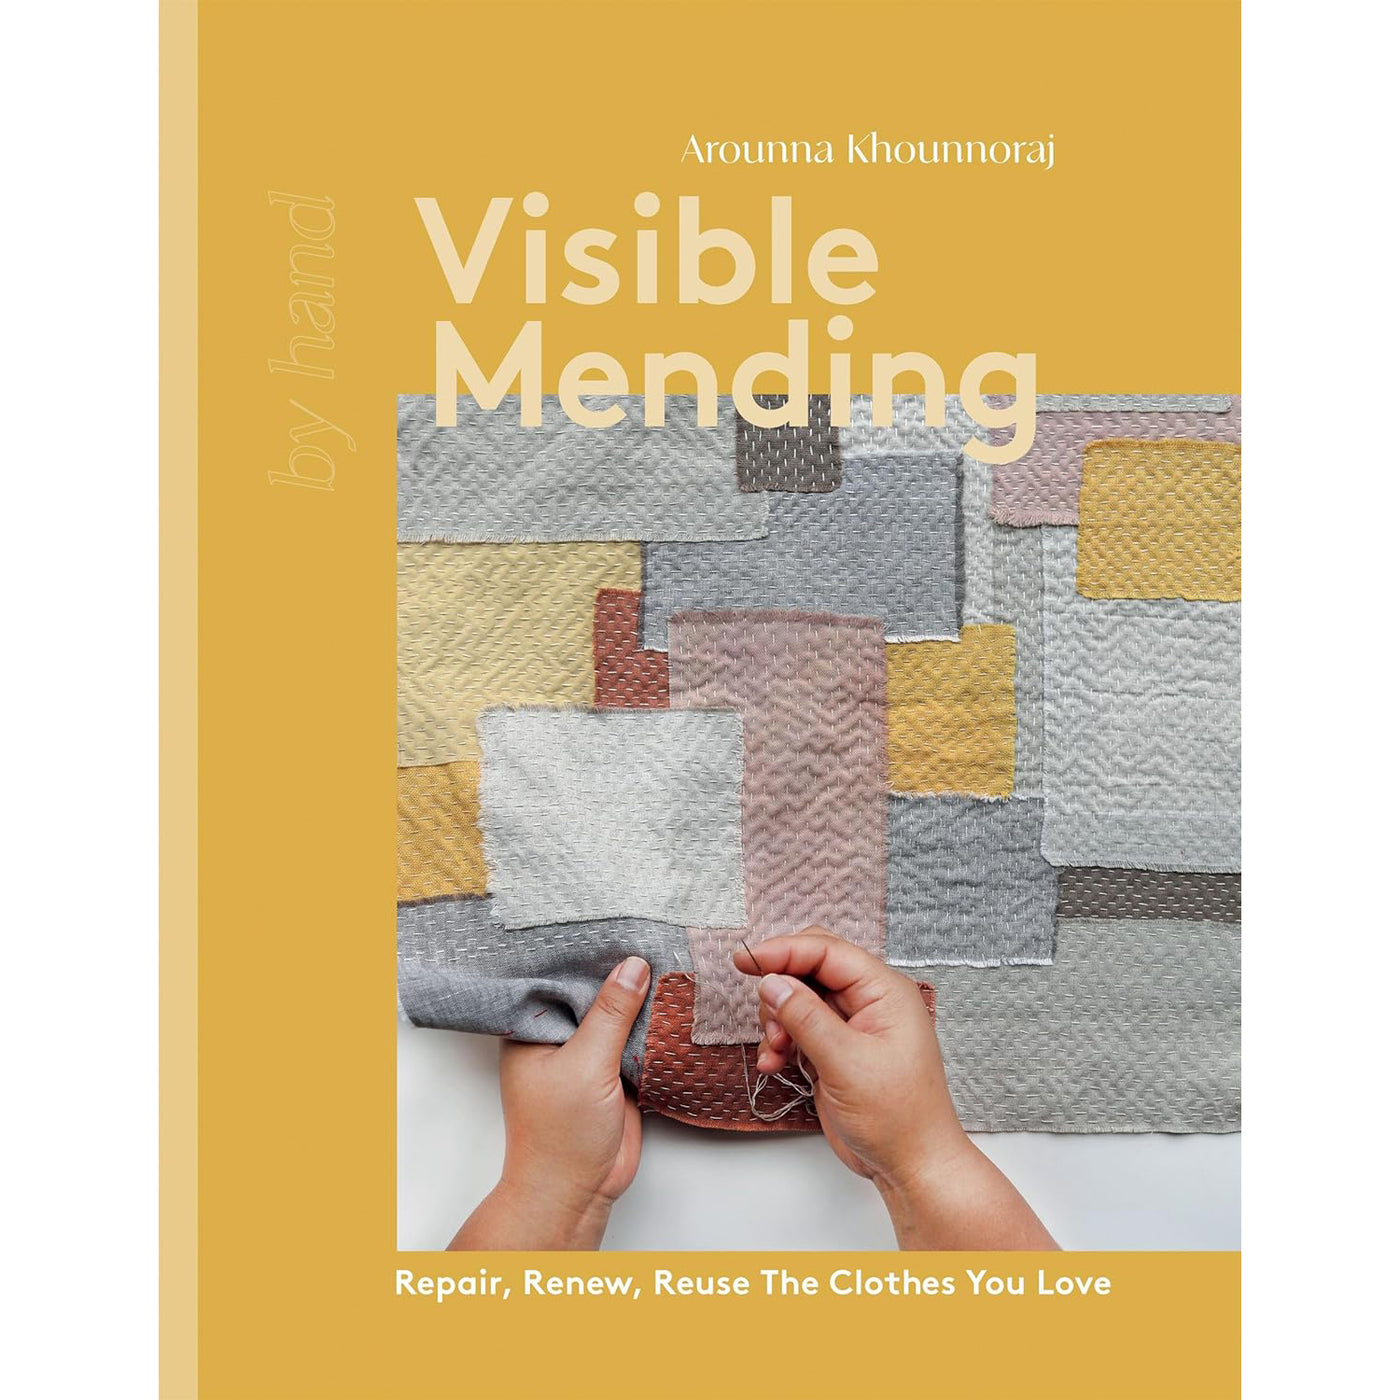 Visible Mending (Arounna Khounnoraj)